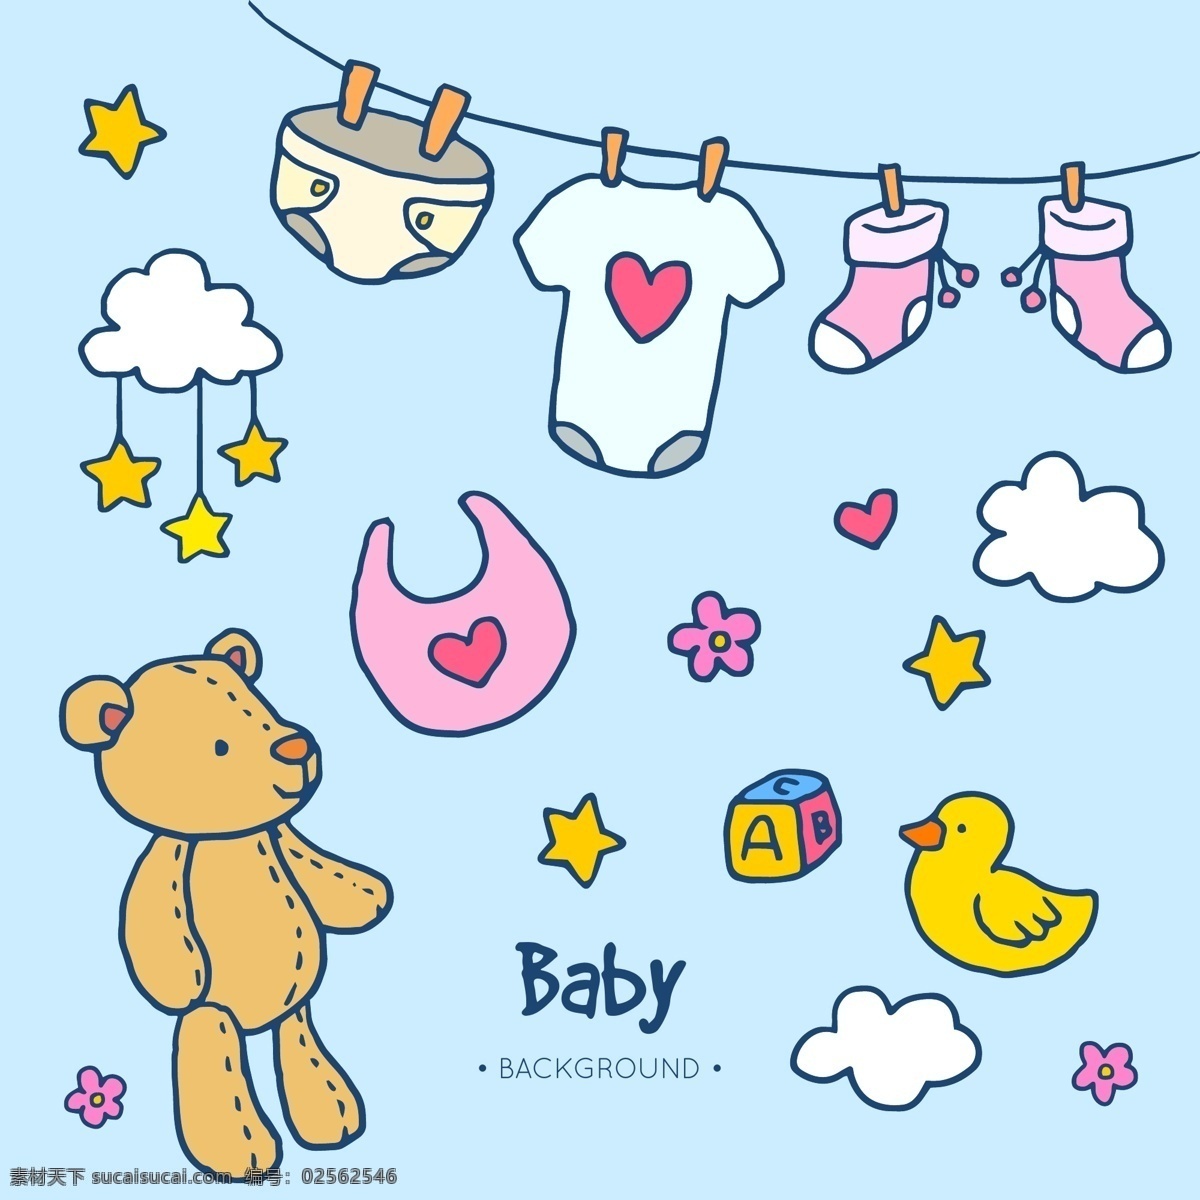 婴儿元素相关 新生儿 宝宝 幼儿 母婴 满月 手绘 卡通 可爱 奶瓶 玩具 衣服 摇铃 尿不湿 围嘴 围兜 奶嘴